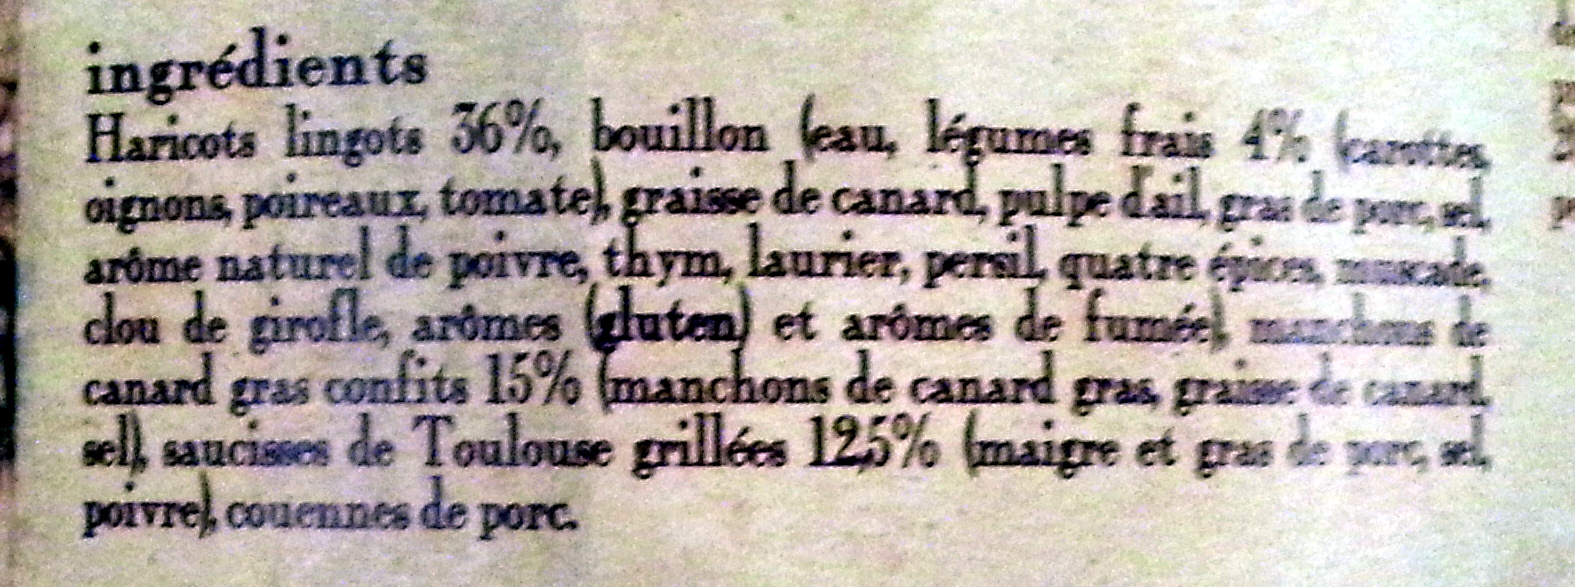 Le cassoulet au confit de canard de Castelnaudary cuisiné dans son bouillon de légumes frais, boîte 2/1 - Ingredients - fr